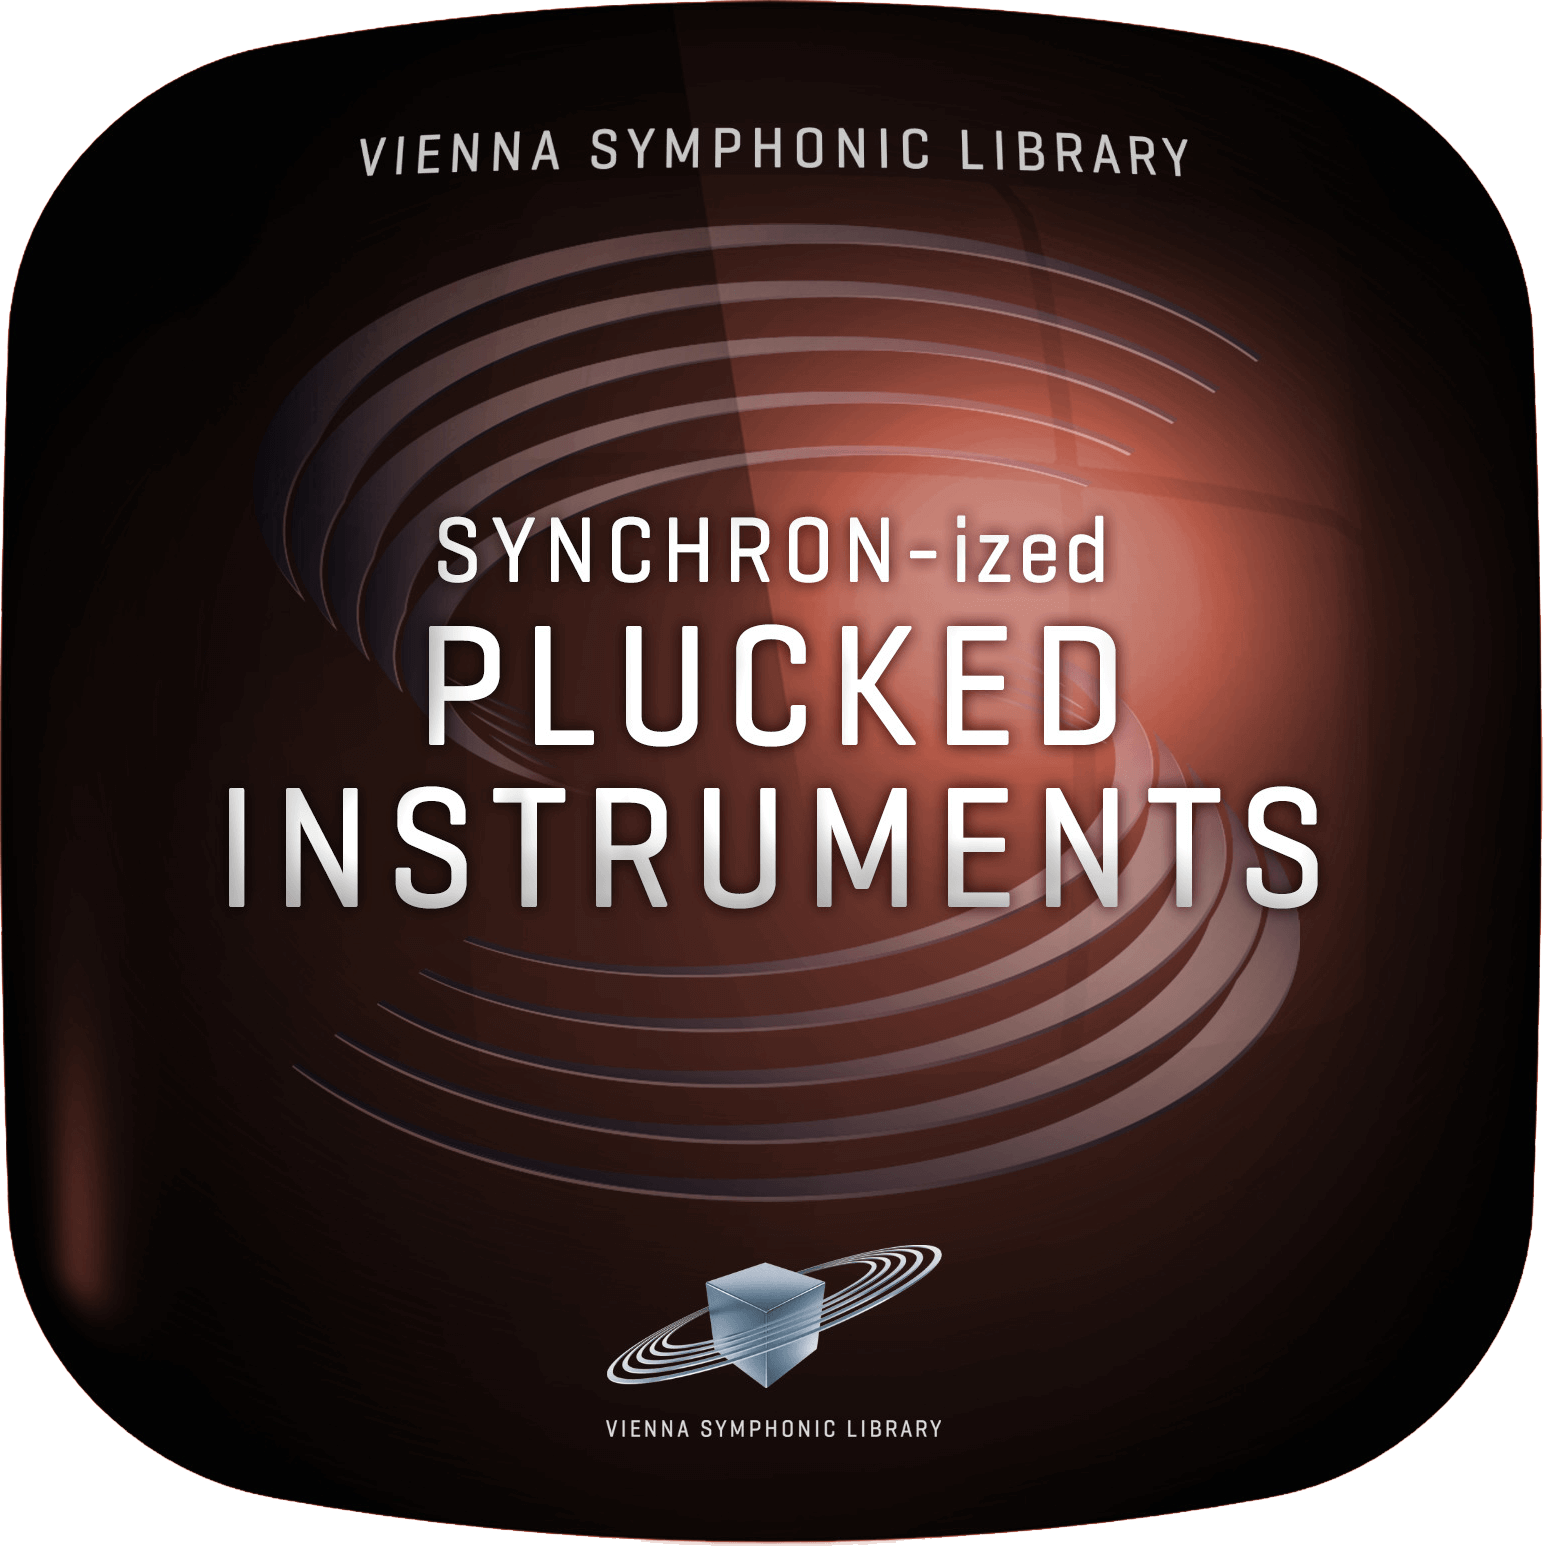 VSL Synchron-ized Plucked Instruments